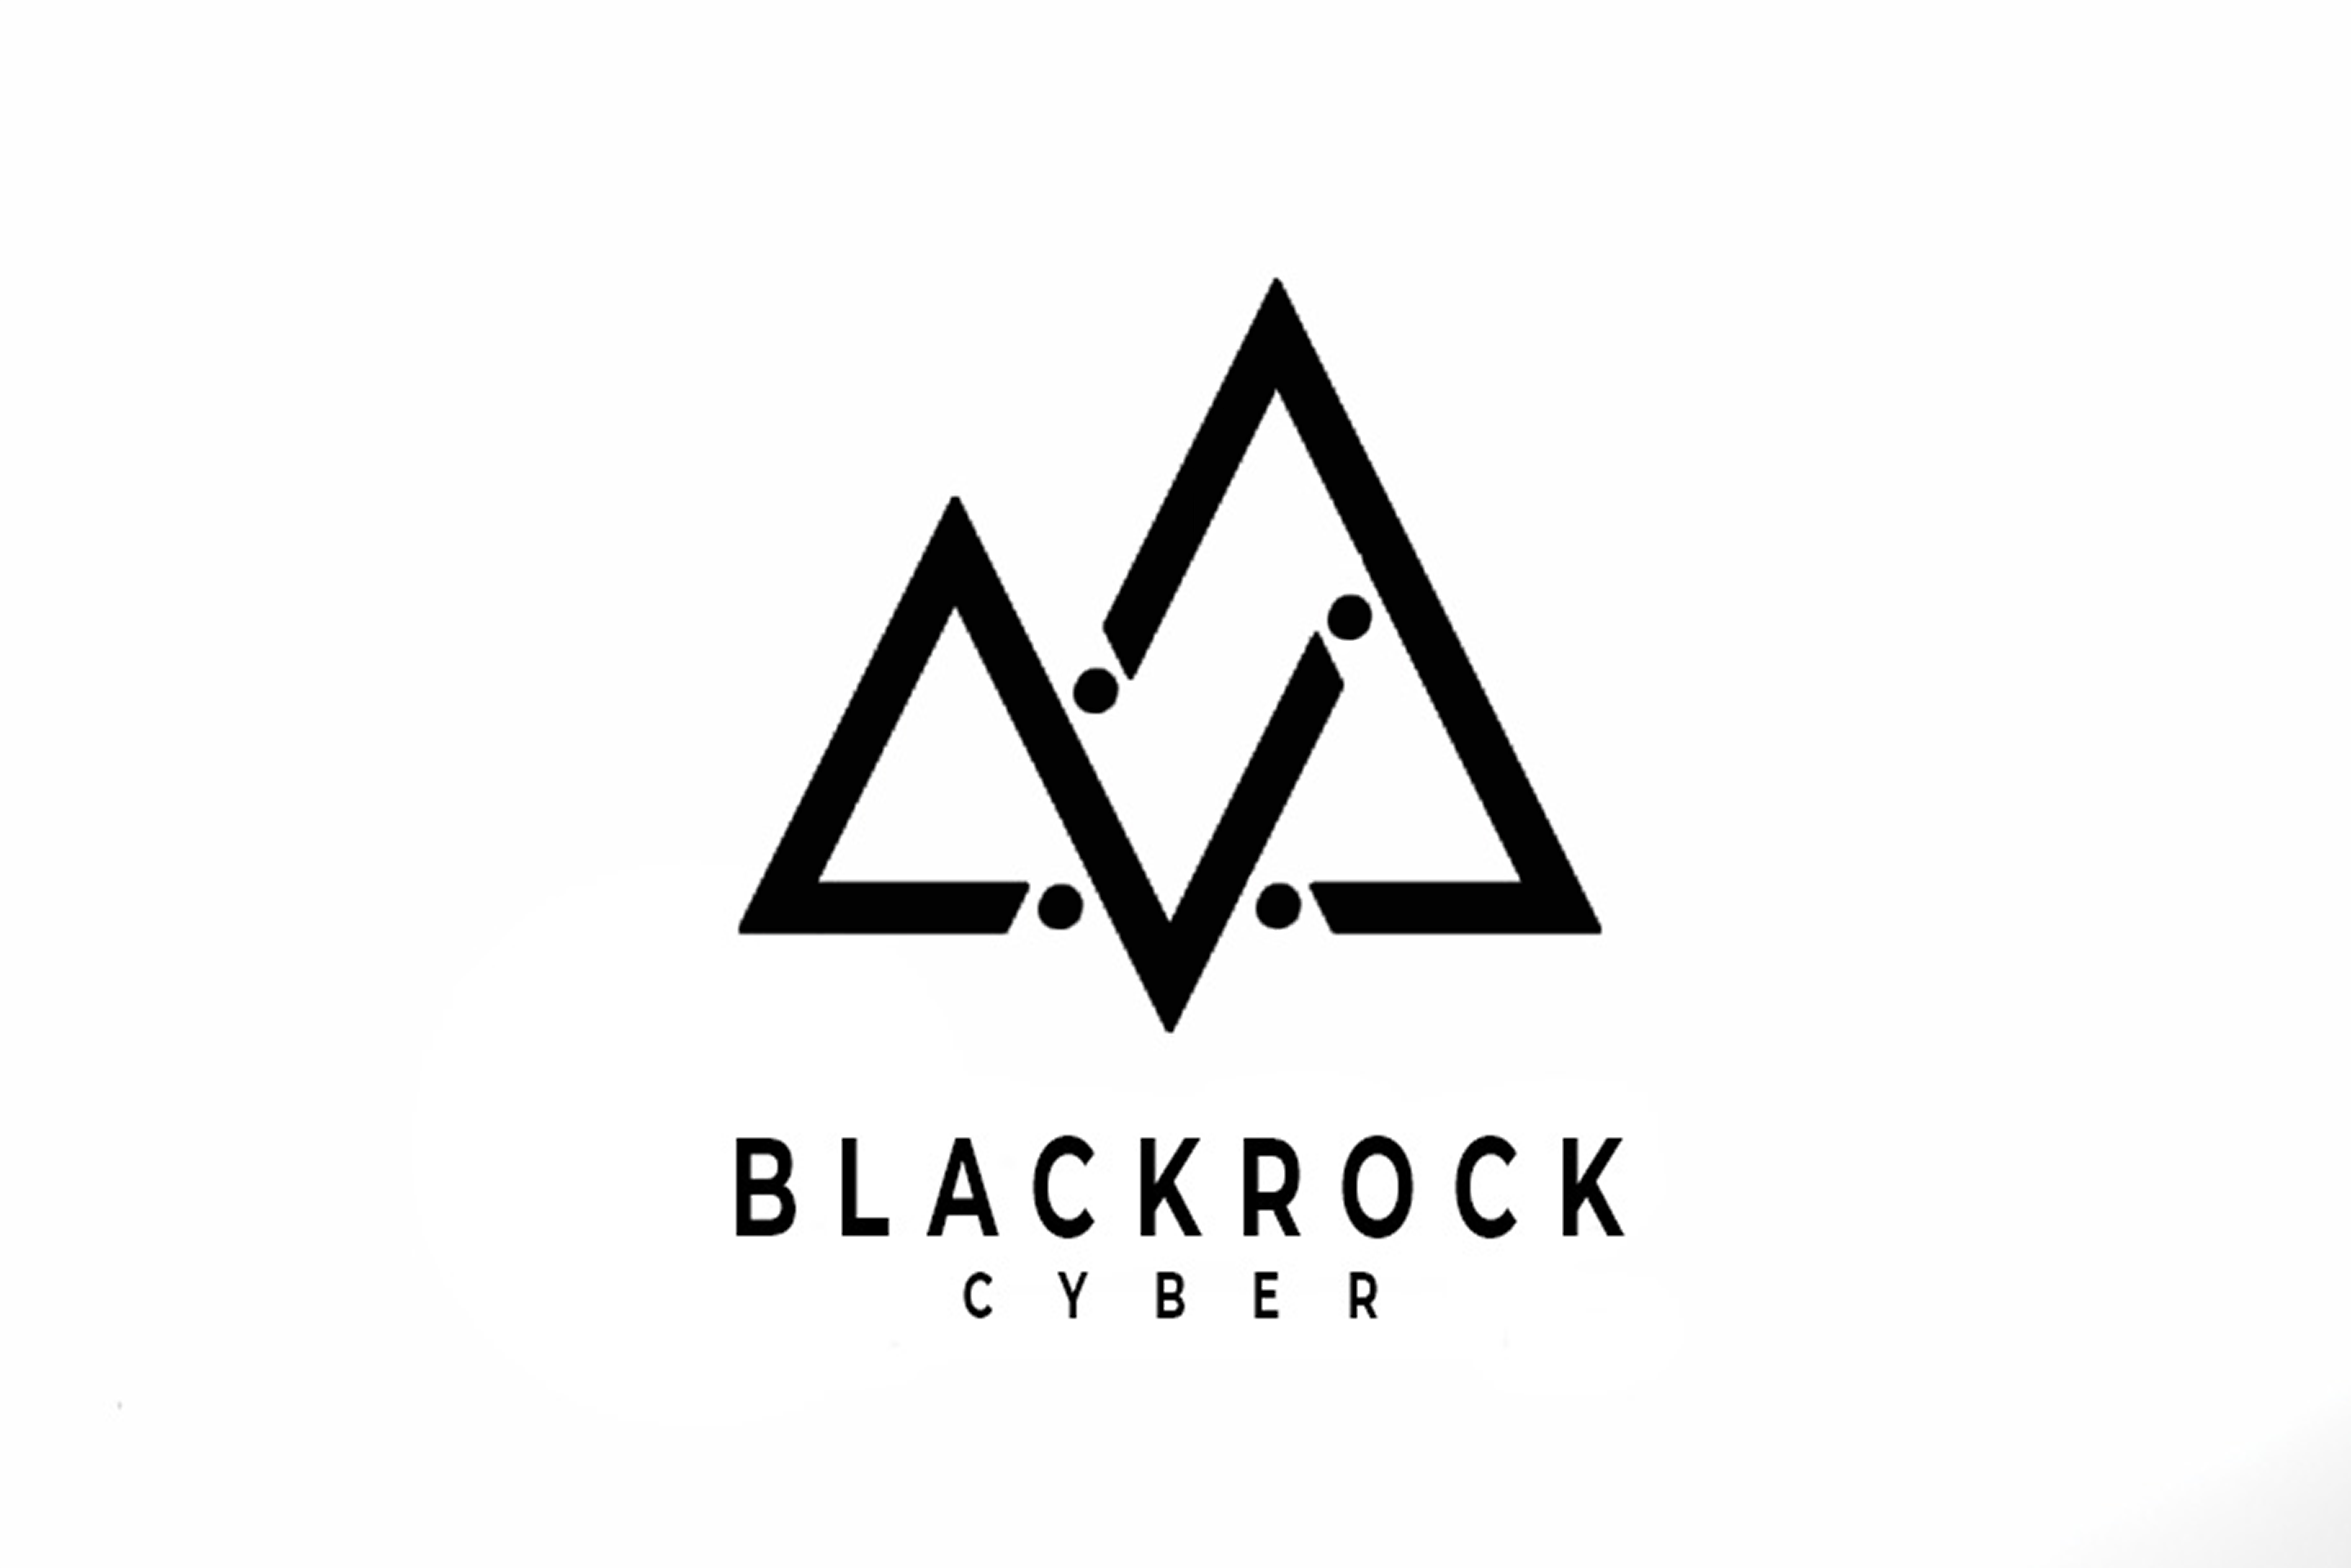 Blackrock Cyber